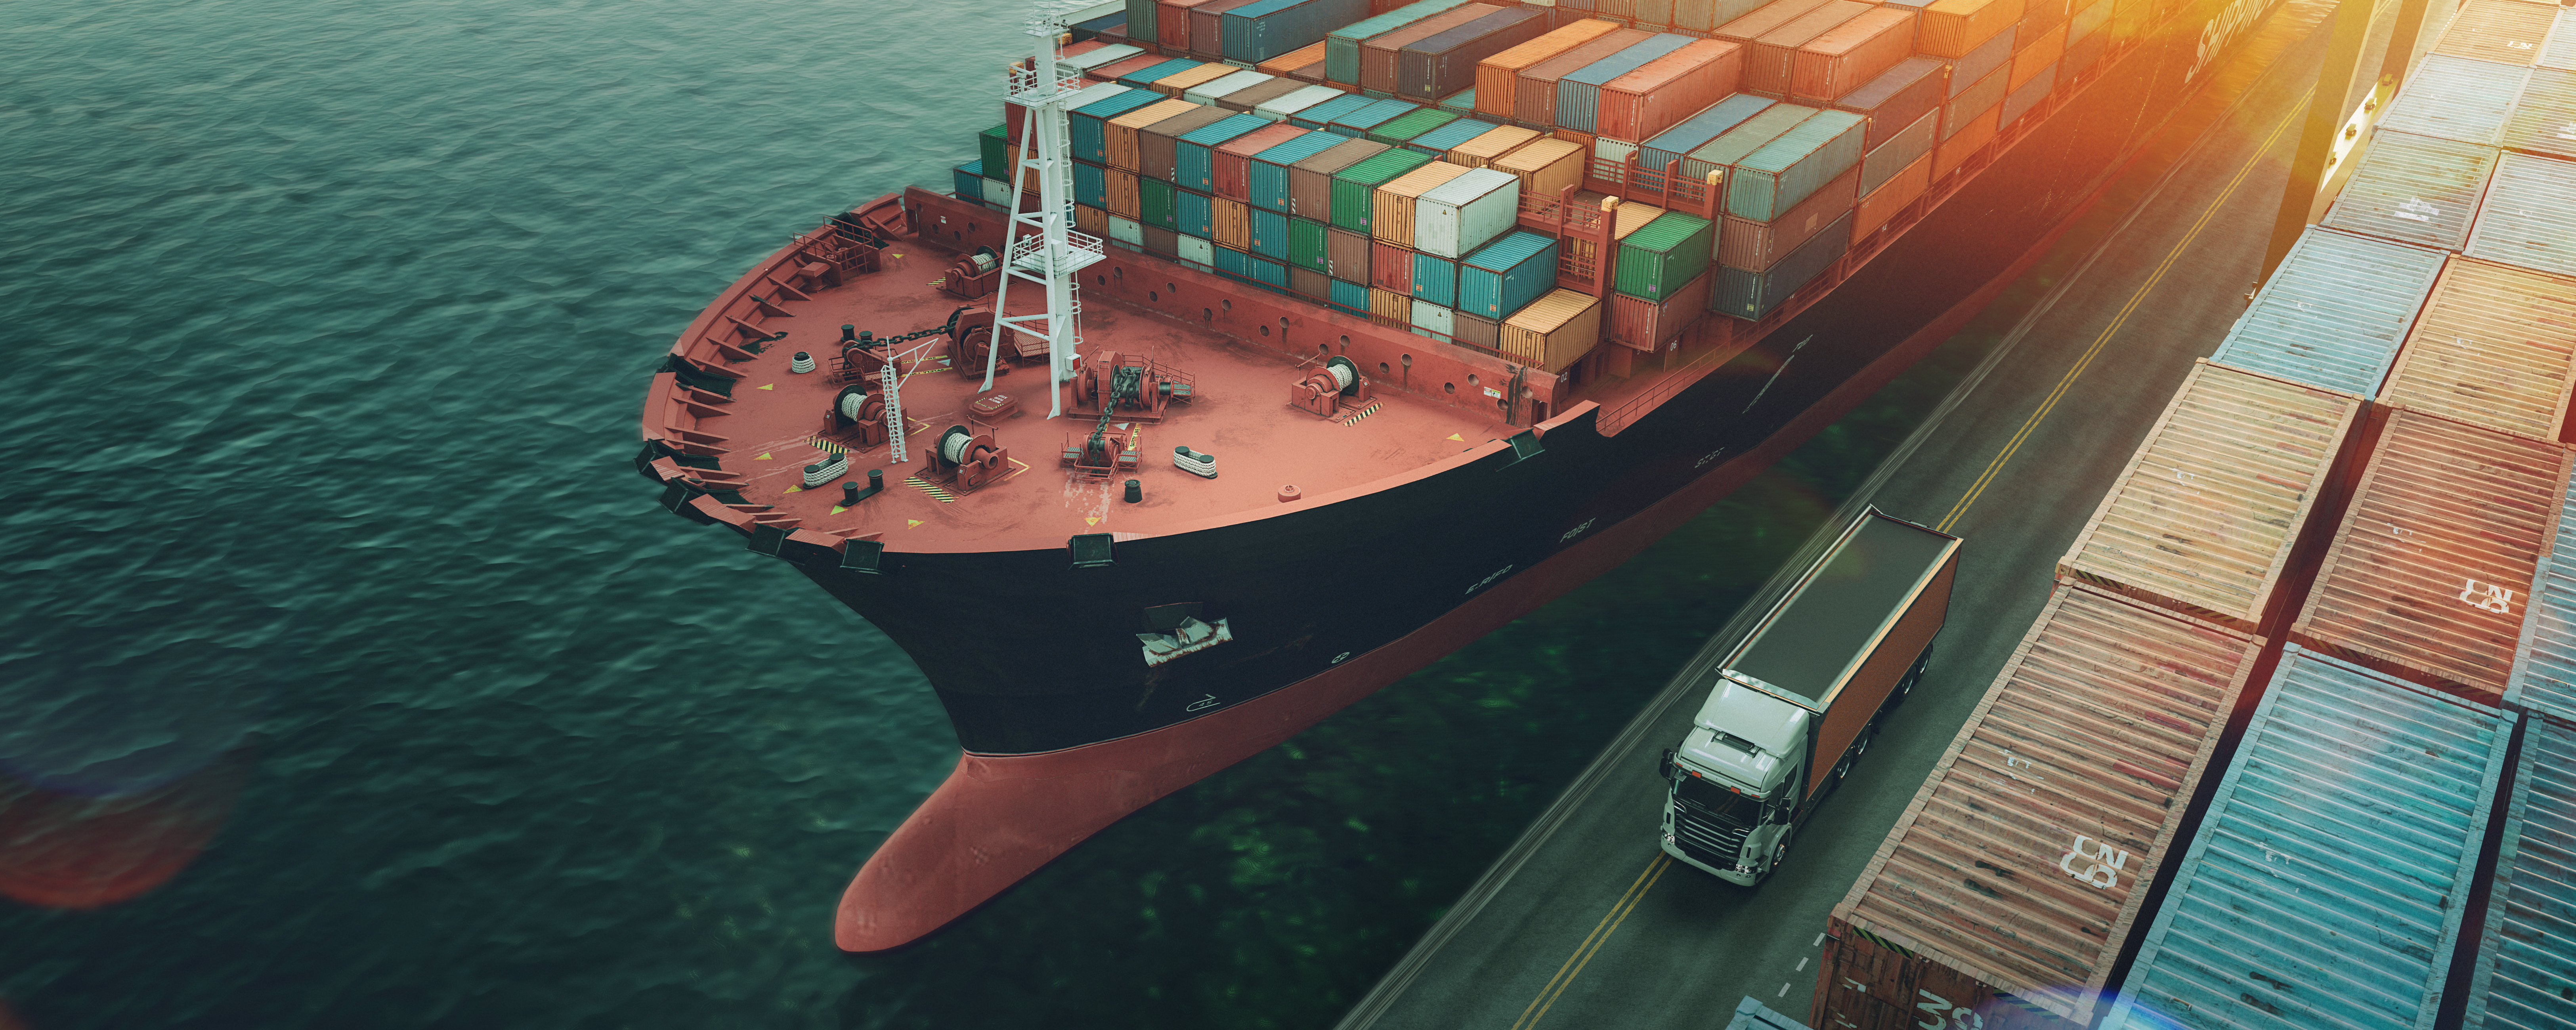 Transport et logistique de navires porte-conteneurs et d'avions cargo.Rendu 3d et illustration.